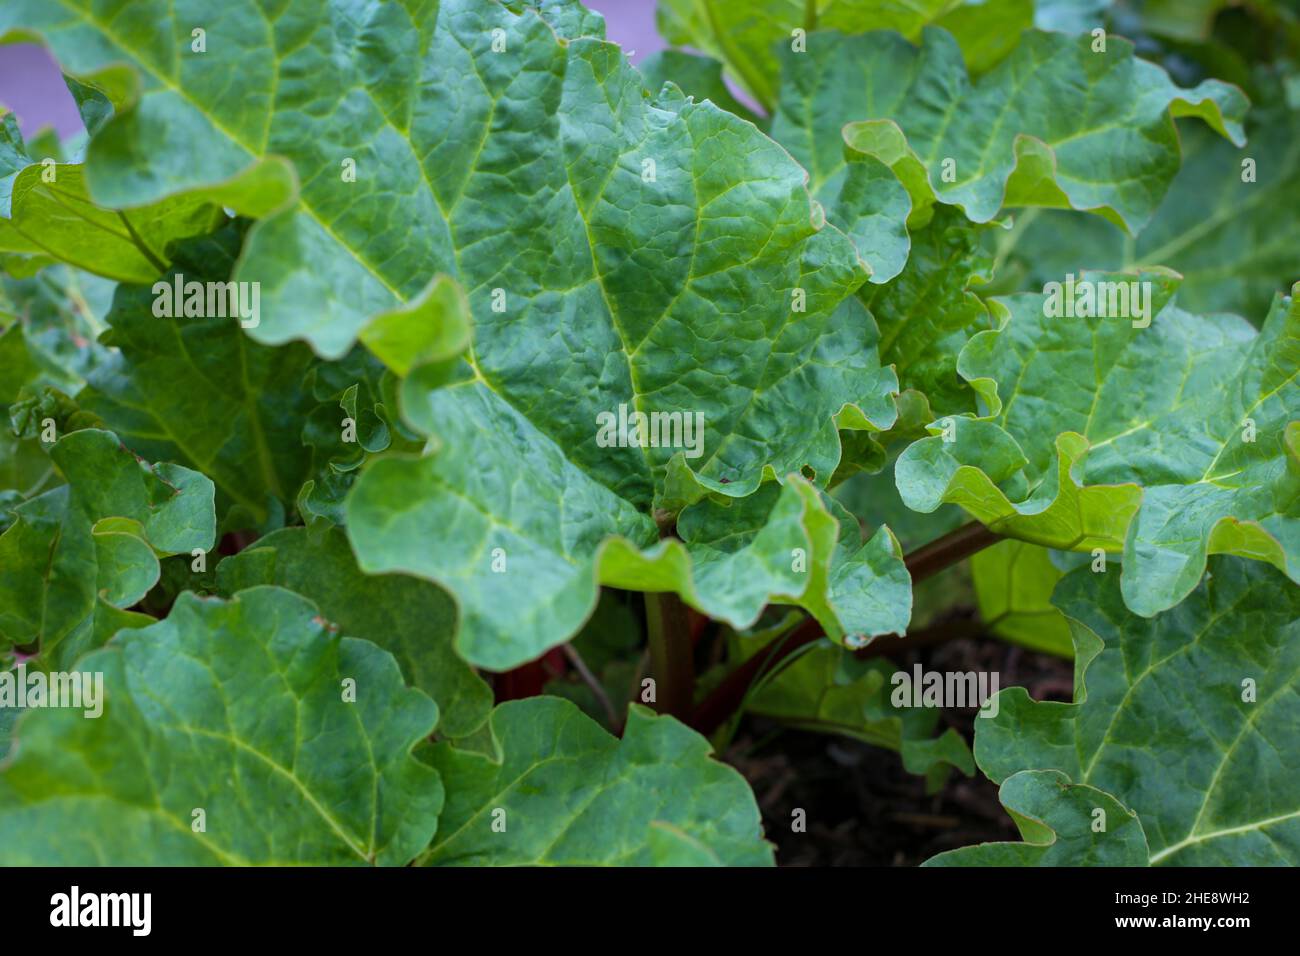 Una planta de ruibarbo saludable que crece en un jardín orgánico que muestra las hojas verdes vibrantes que son venenosas para comer. Foto de stock